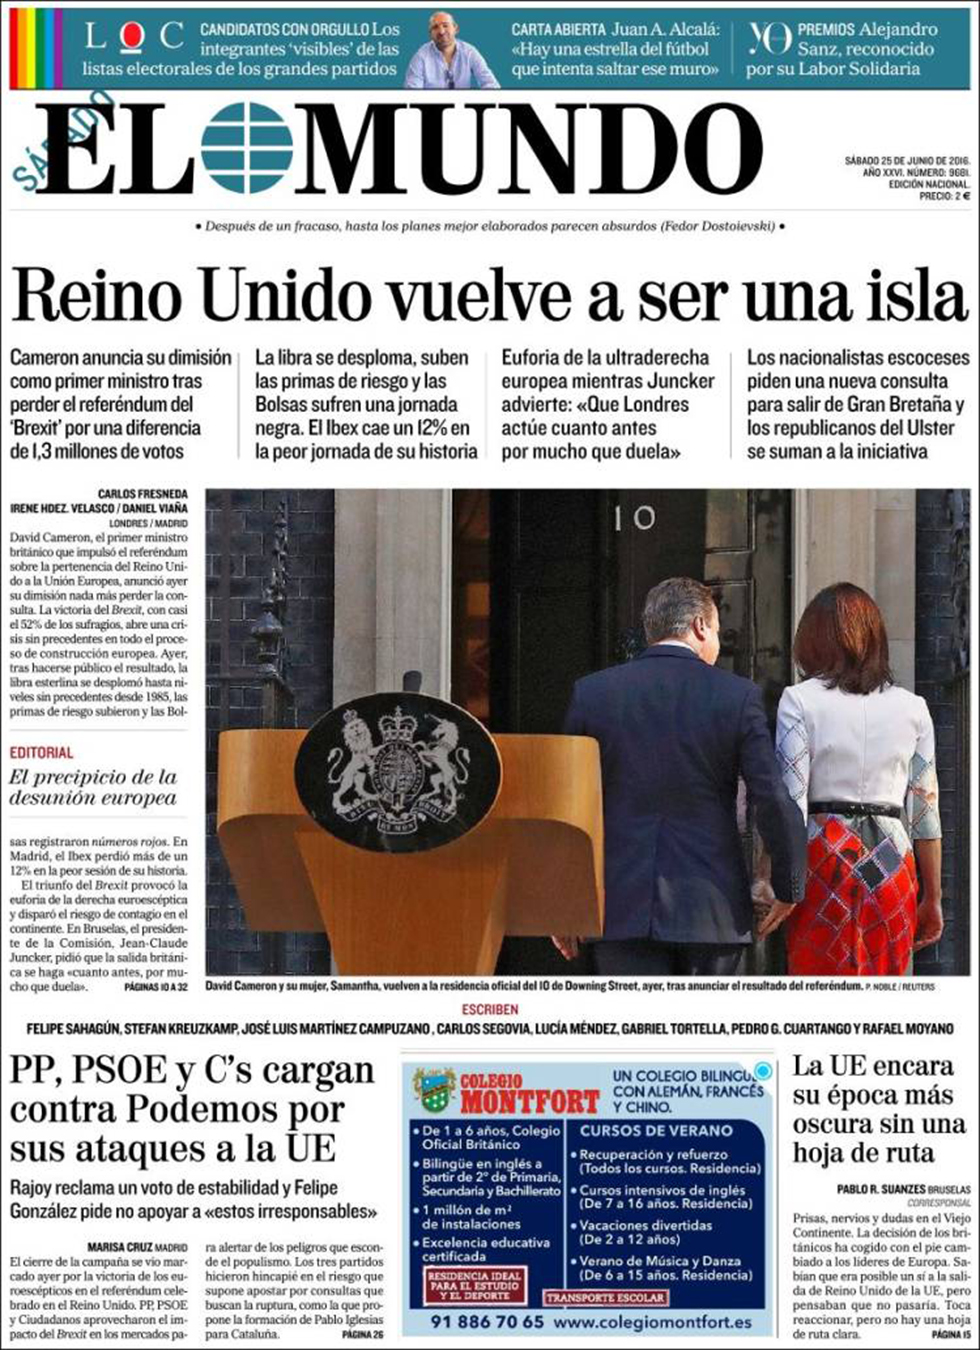 "אל מונדו" הספרדי: בריטניה חוזרת להיות אי ()